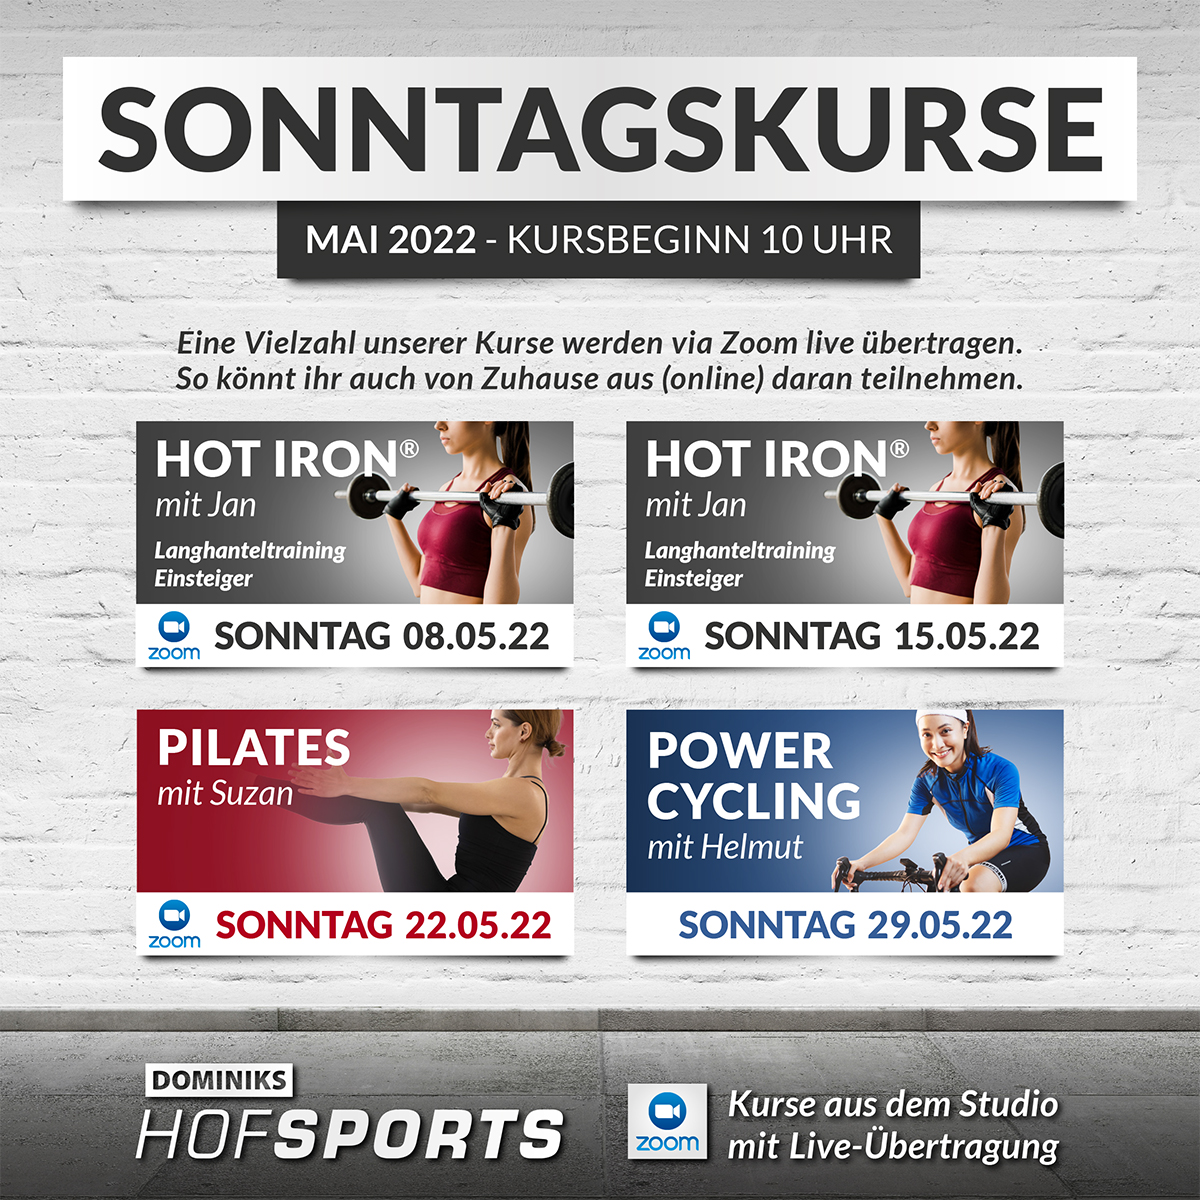 DOMINIKS-HofSports-Sonntagskurse-MAI-2022